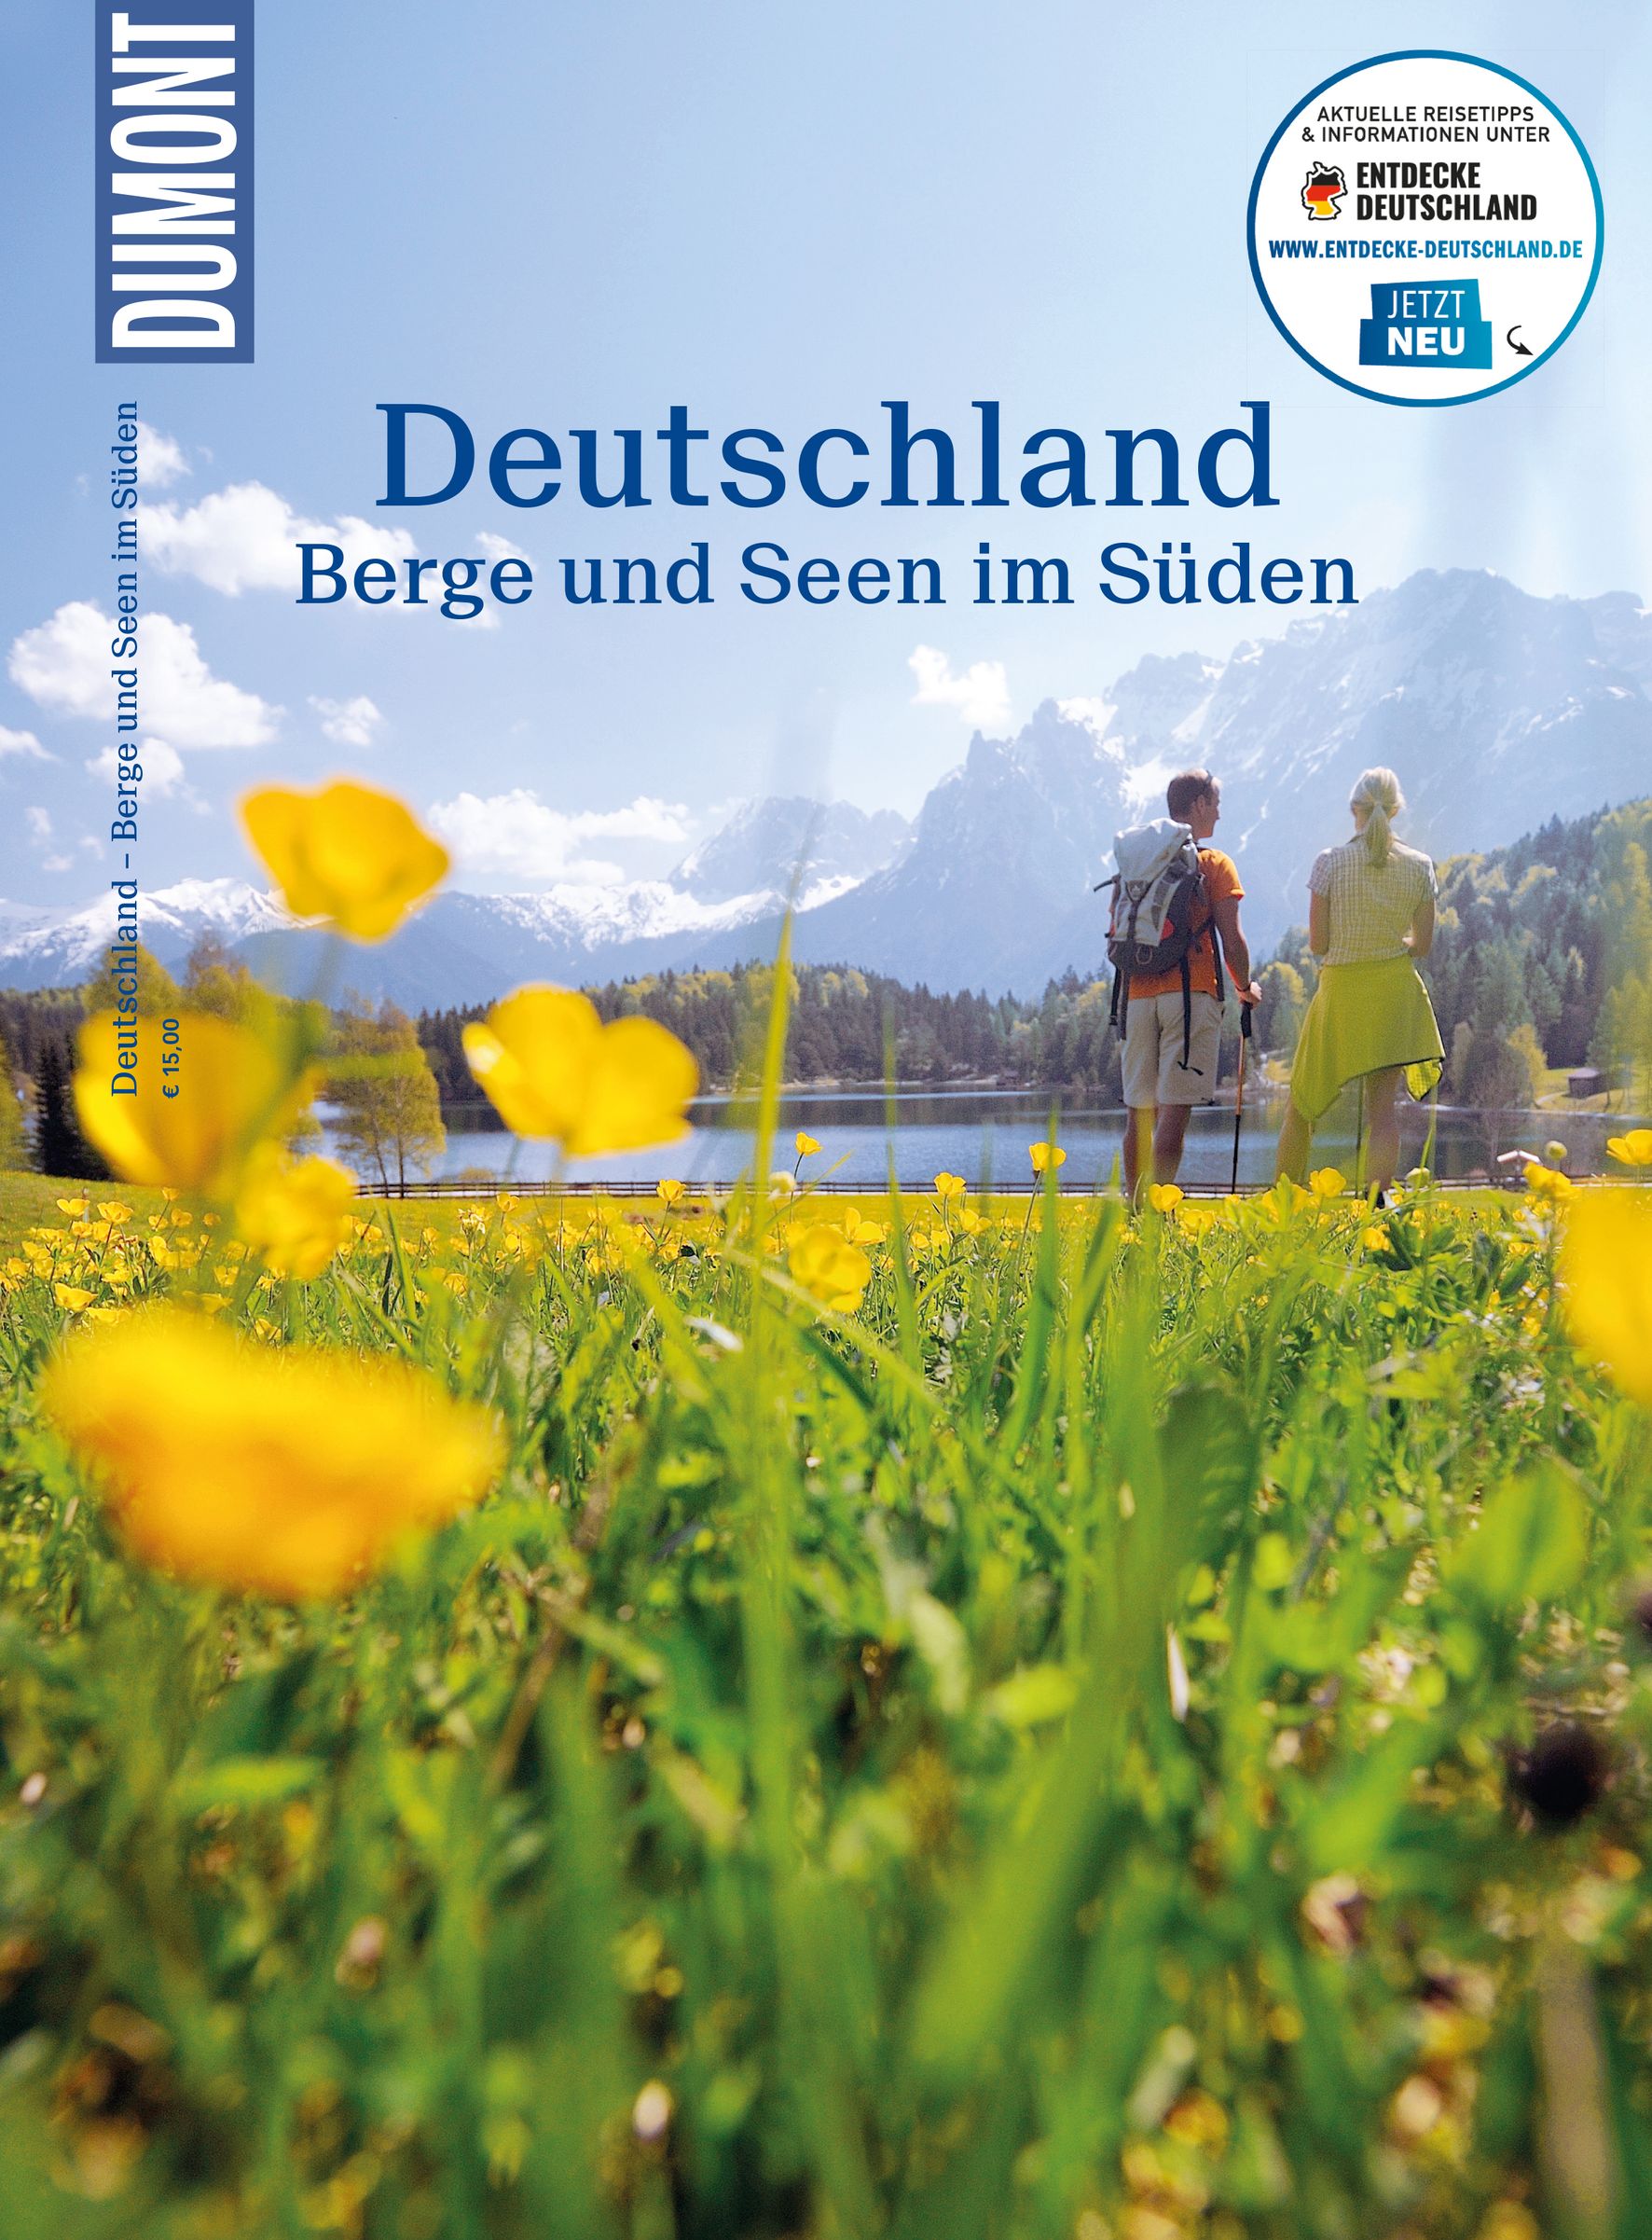 MAIRDUMONT Deutschland, Berge und Seen im Süden (eBook)